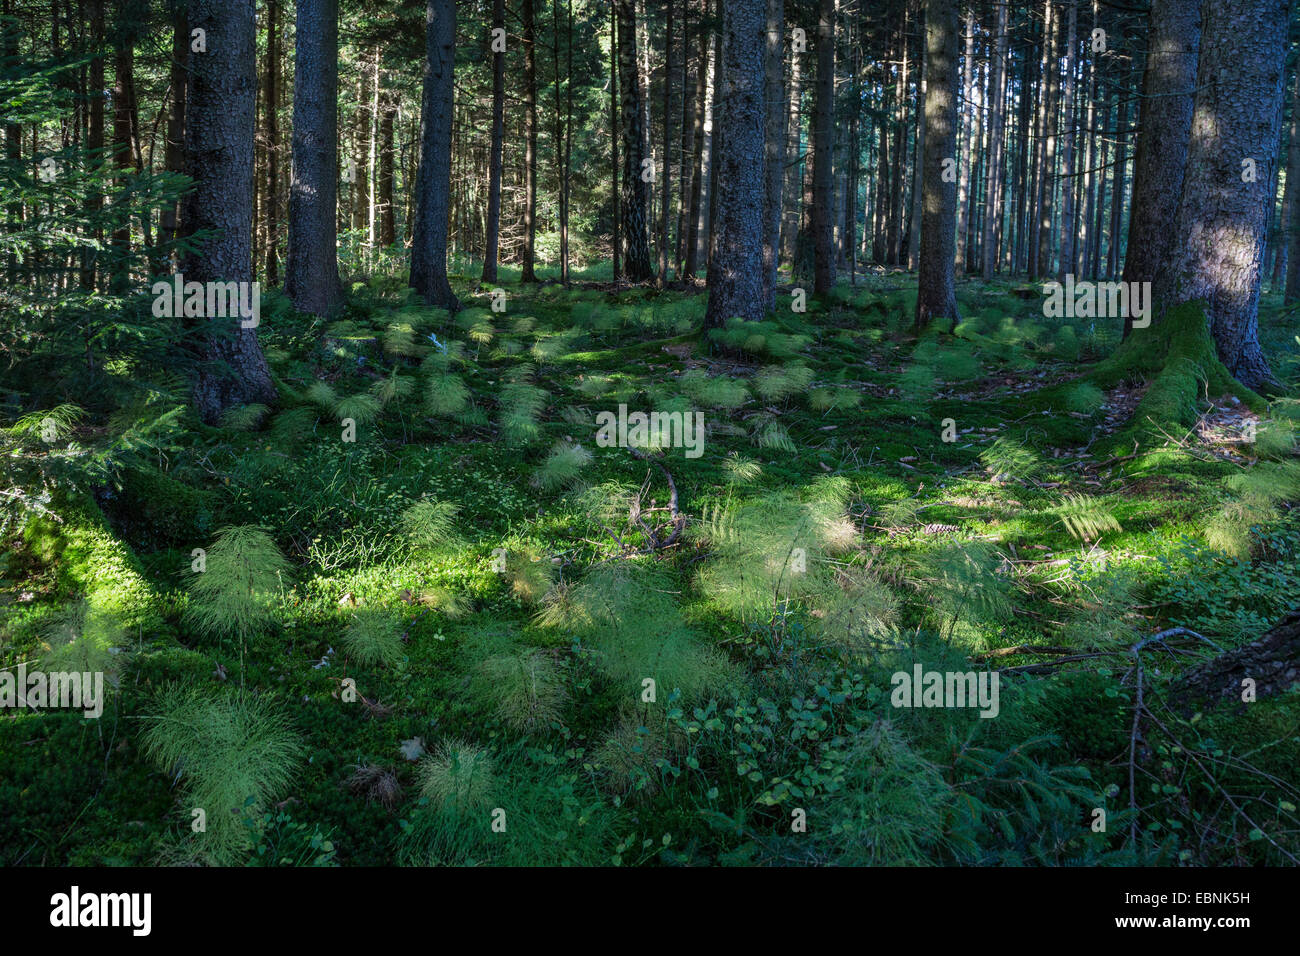 Sylvan equiseto, legno equiseto, bosco equiseto (Equisetum sylvaticum), in una foresta, in Germania, in Baviera Foto Stock